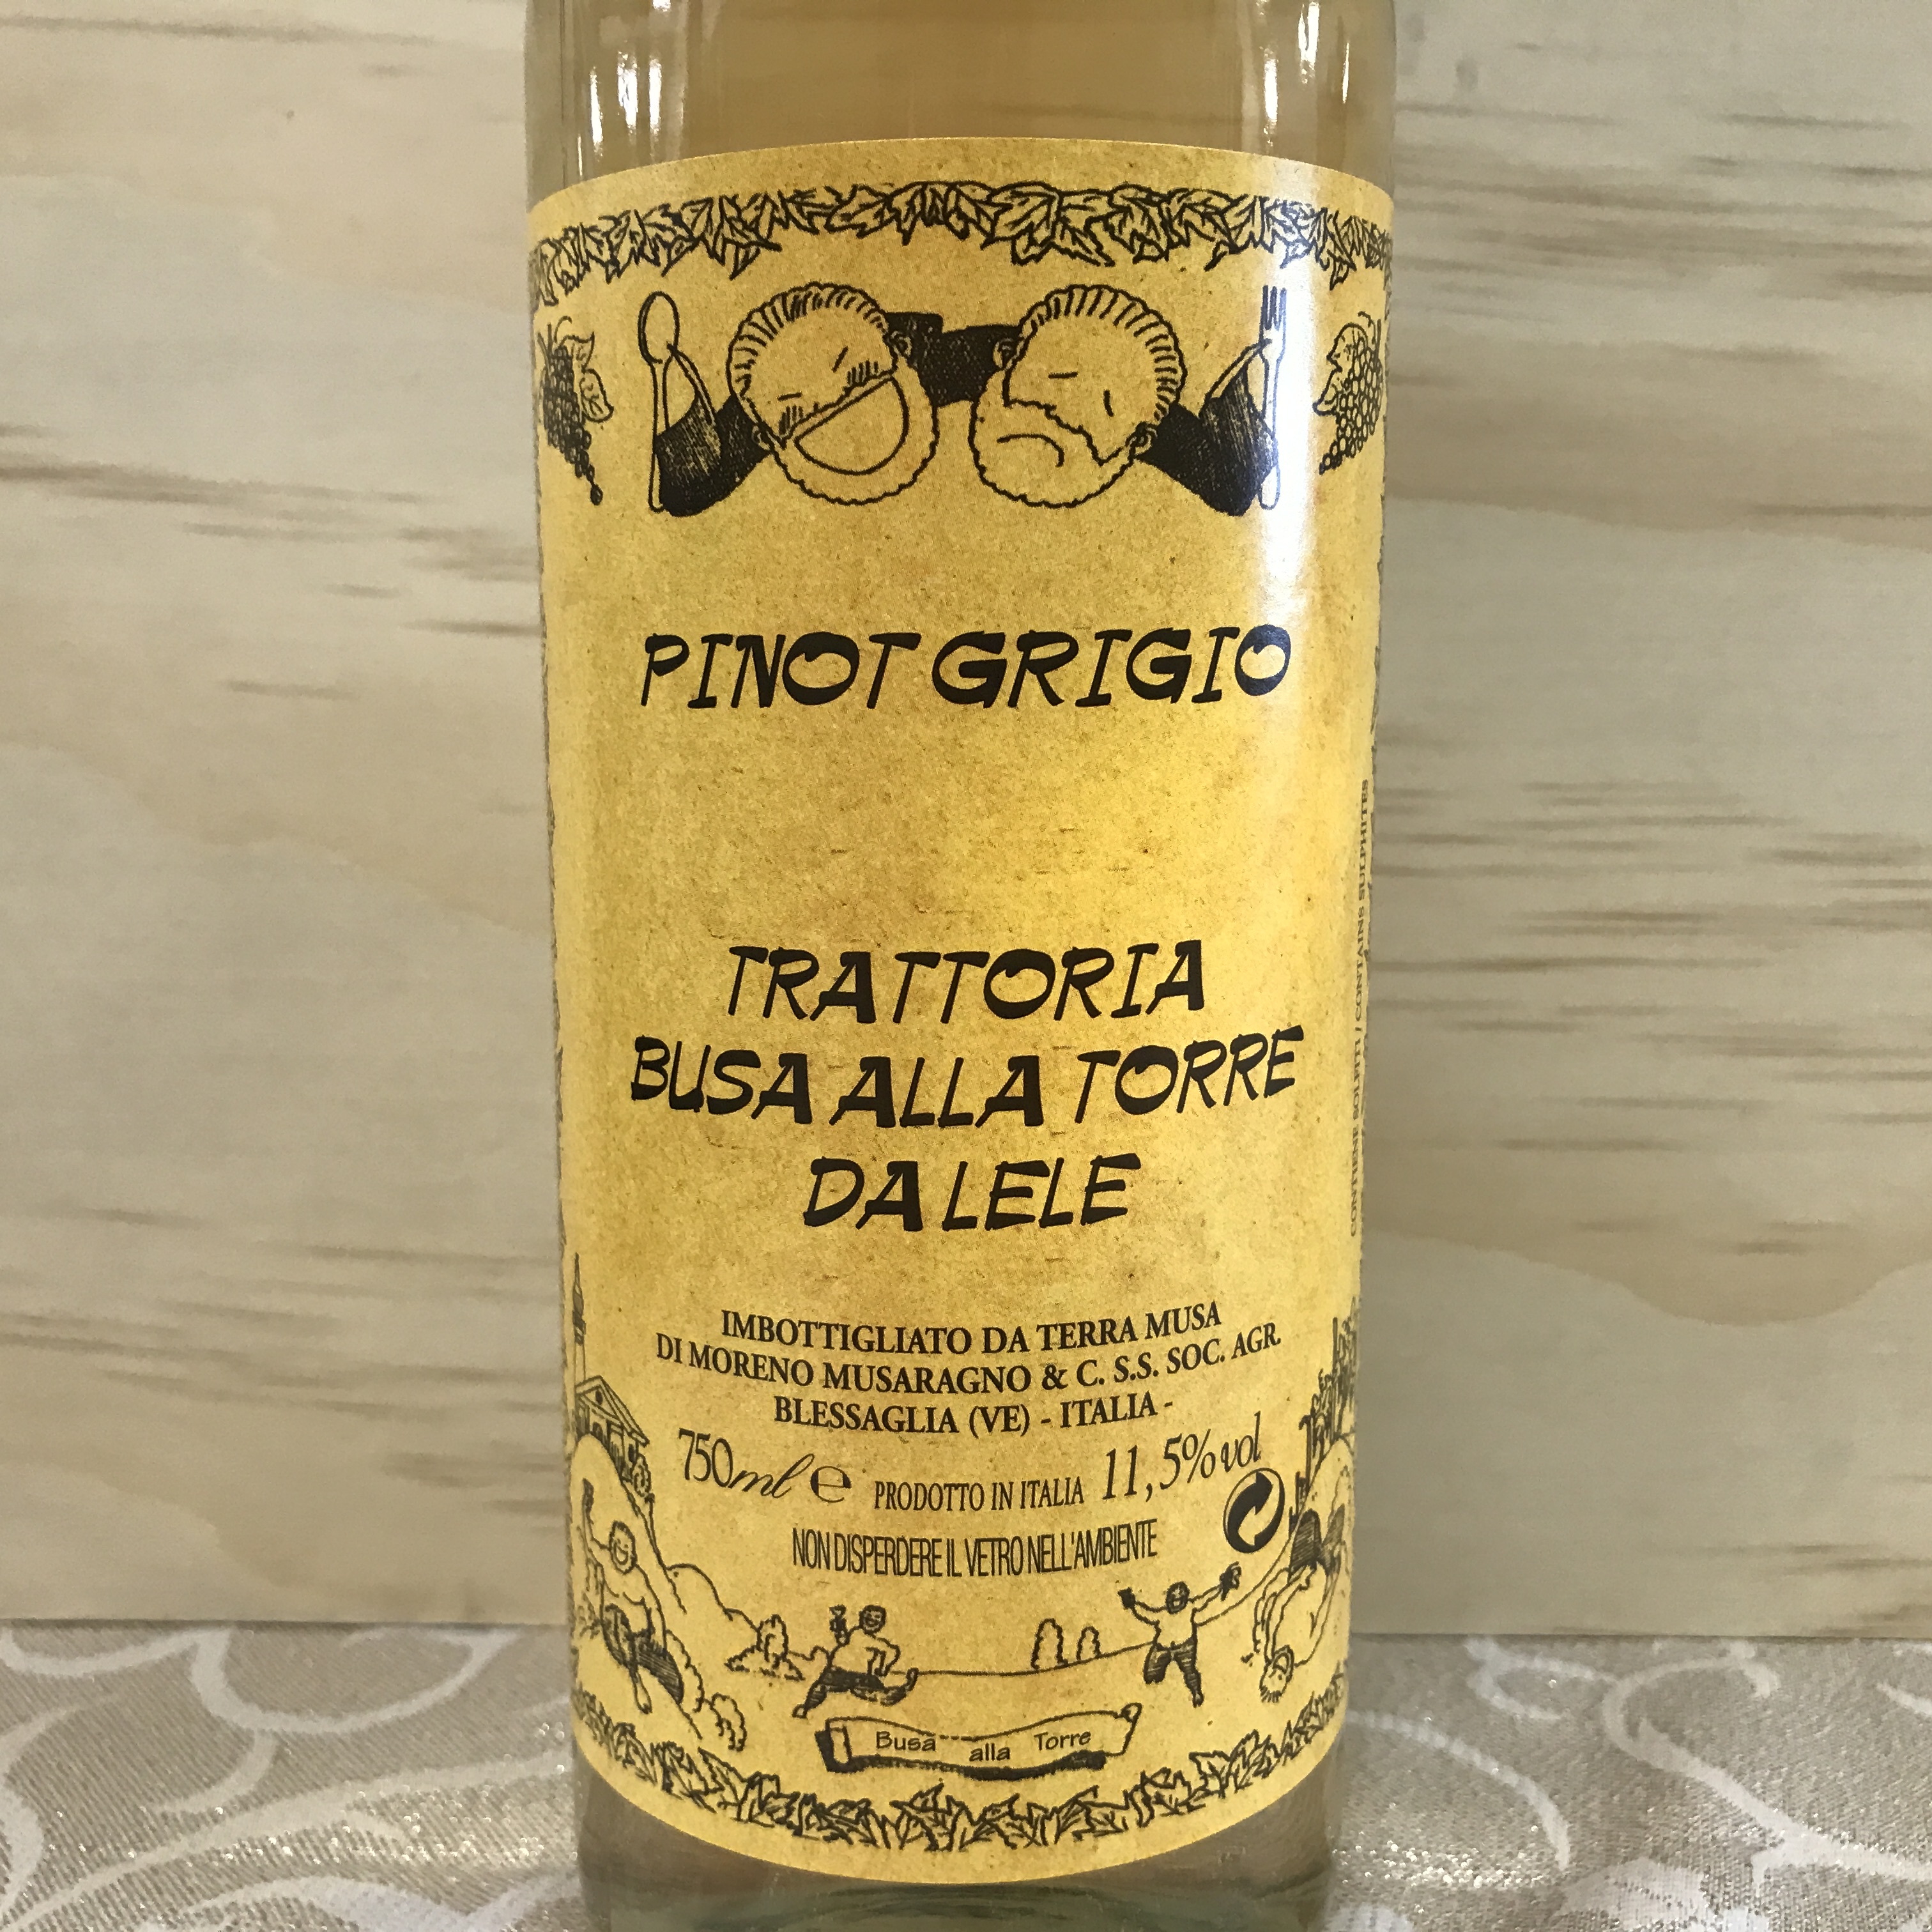 Trattoria Busa alla Torre DaLele Pinot Grigio 2019 Organic grapes